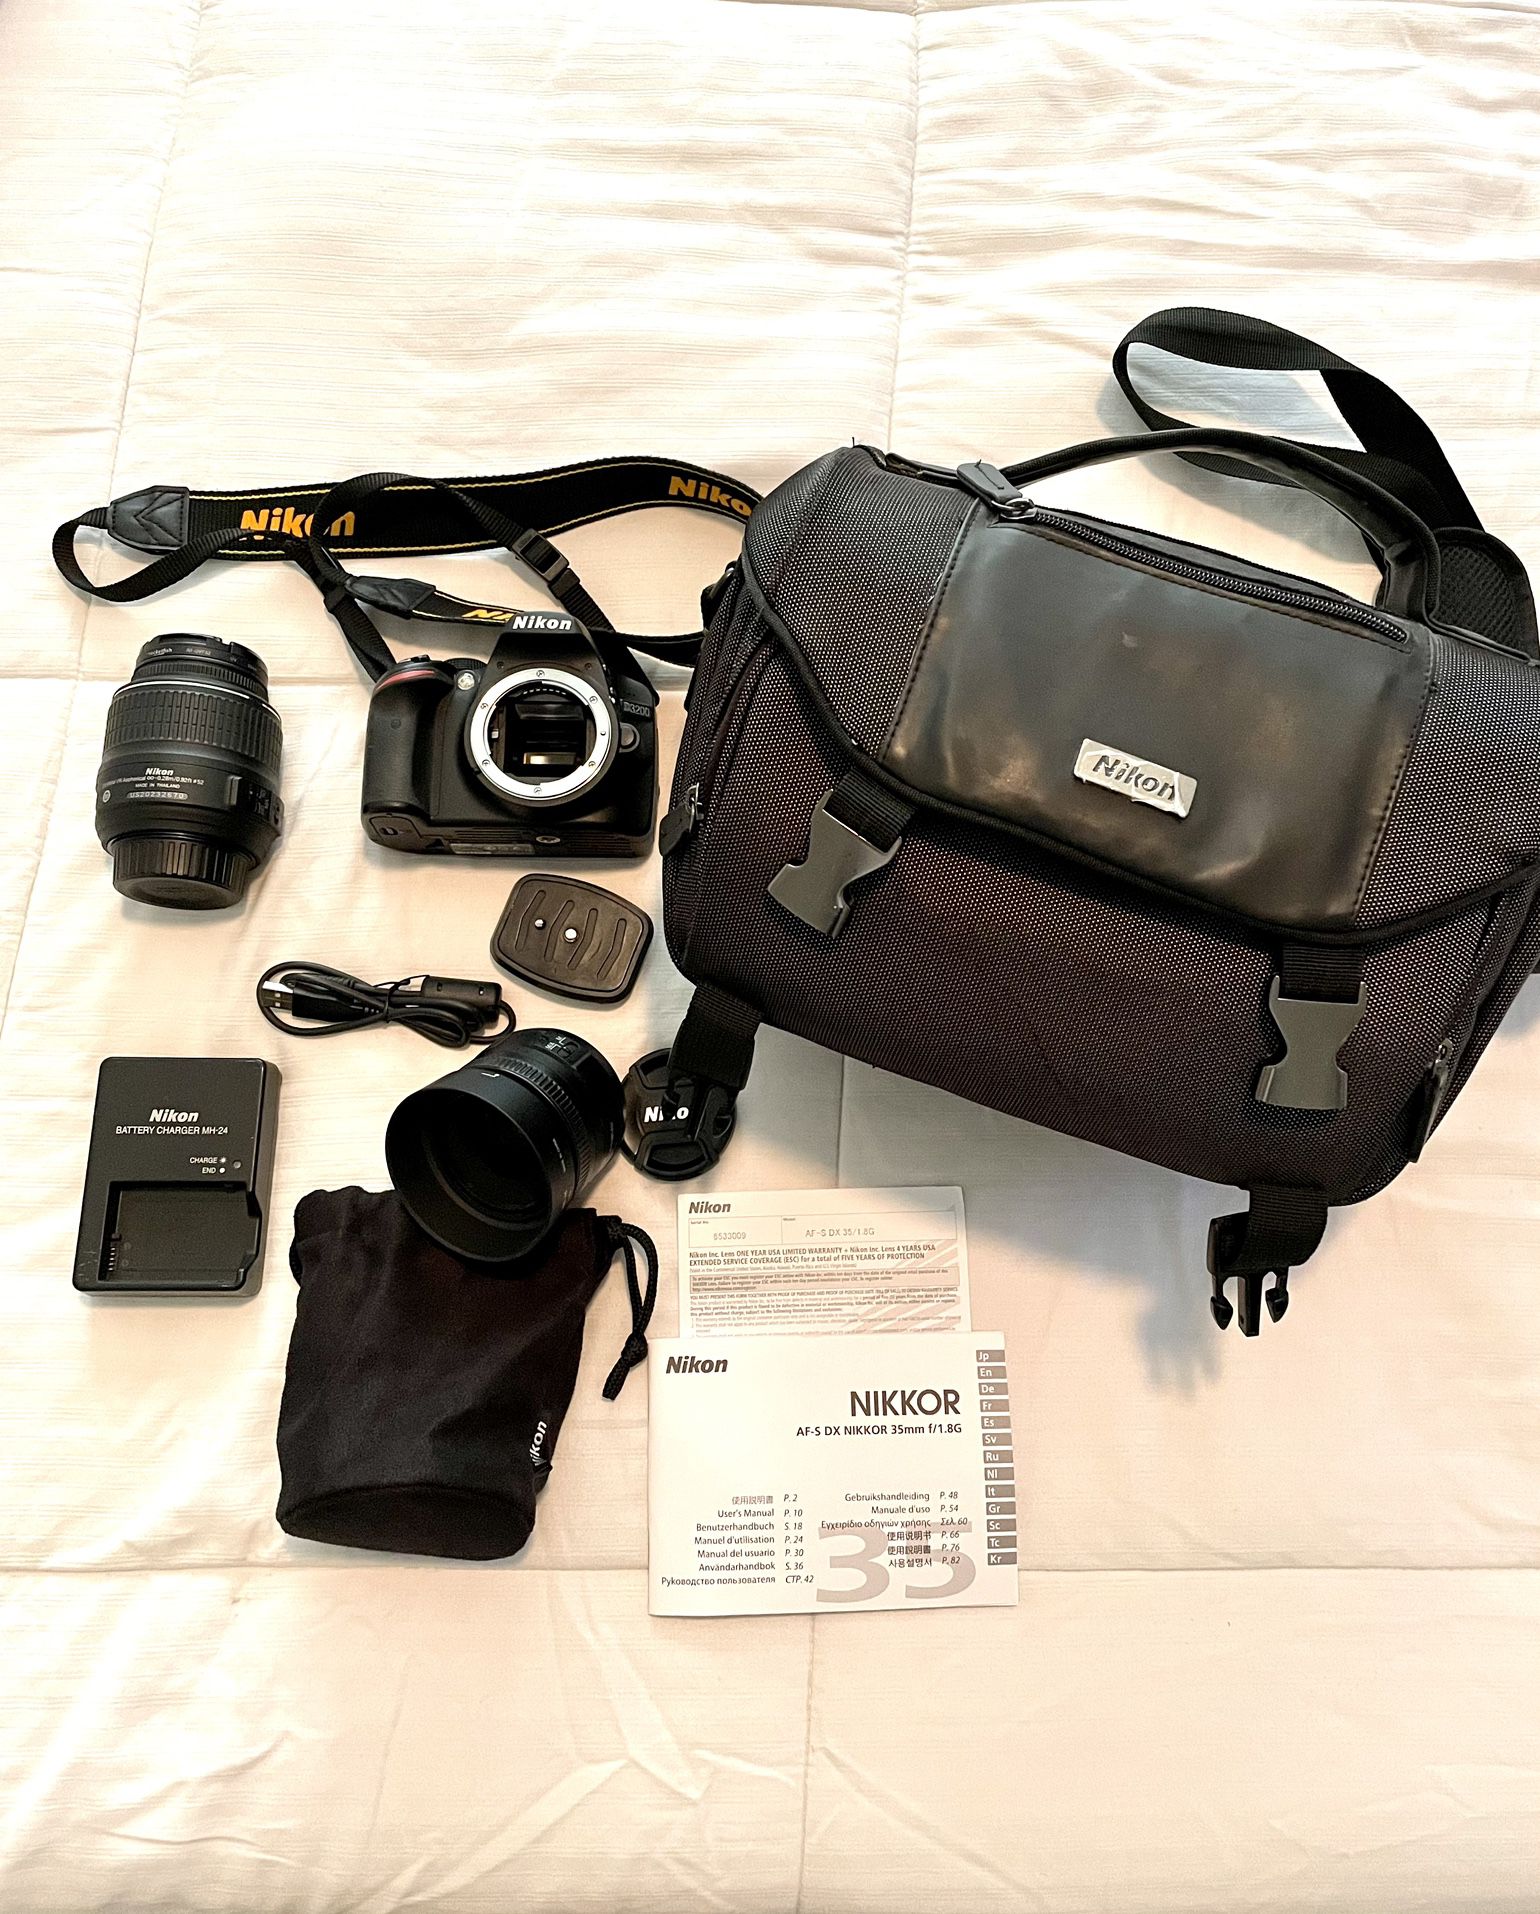 Nikon D3200 DSLR Camera & Accessories